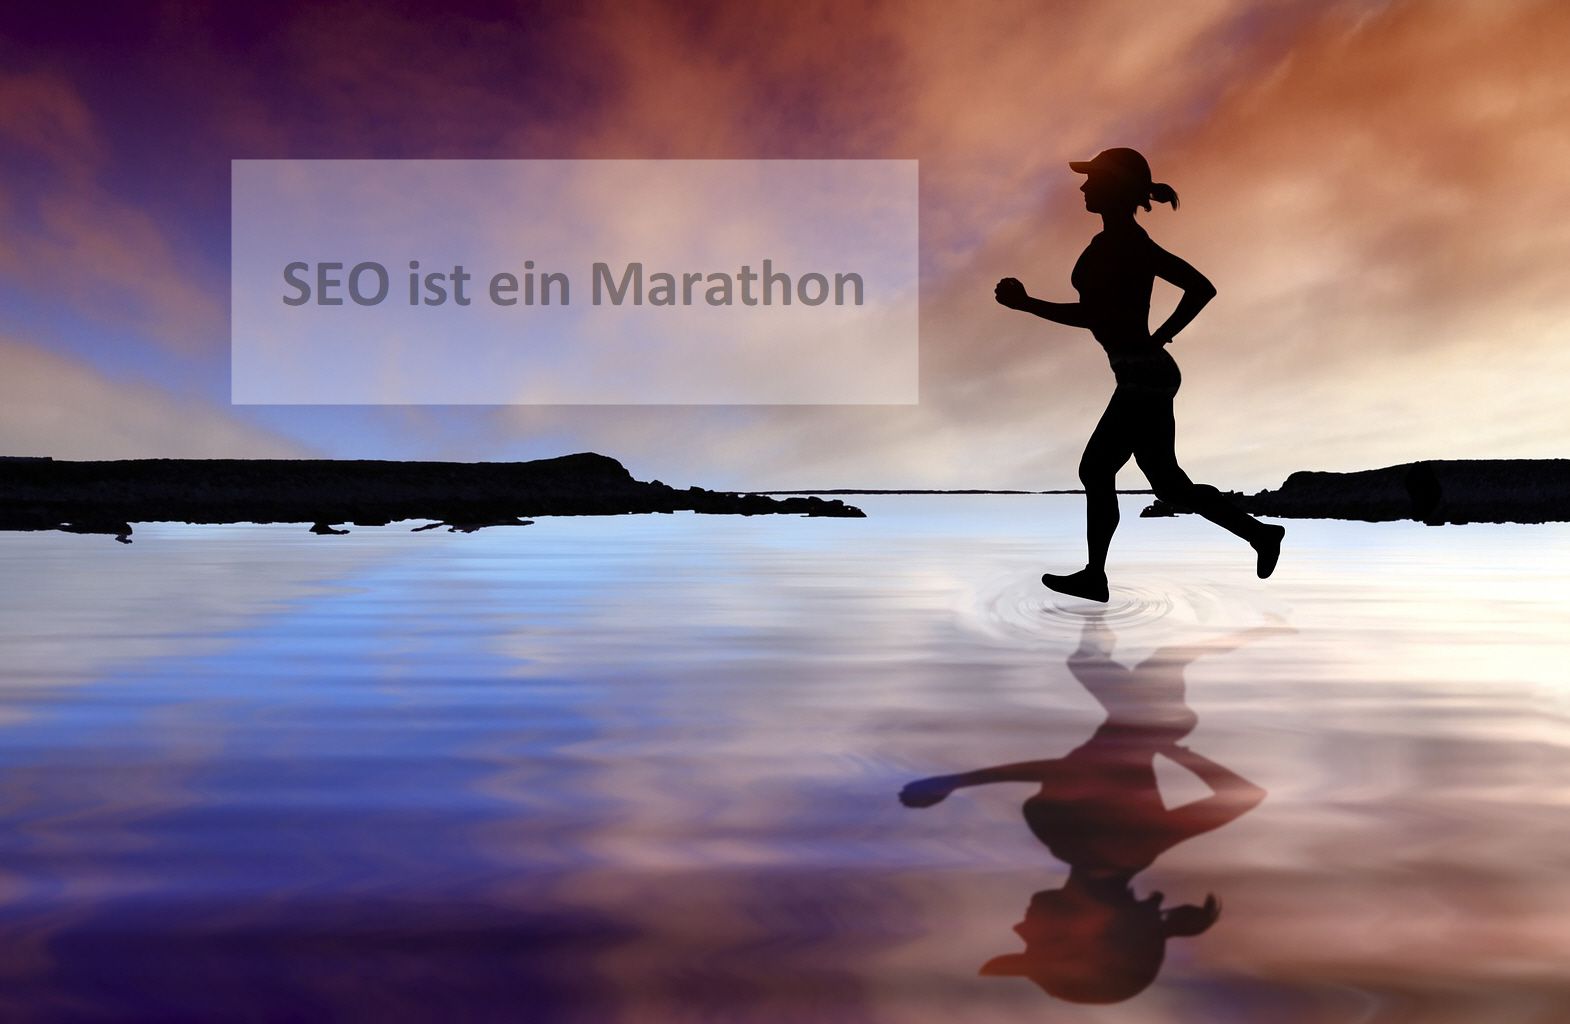 SEO (#Suchmaschinenoptimierung) und Sport haben viel gemeinsam. Wer beim Marathon das Ziel erreicht, hat sich in Form gebracht. Wer bei Google vorne steht, hat #SEO gemacht.